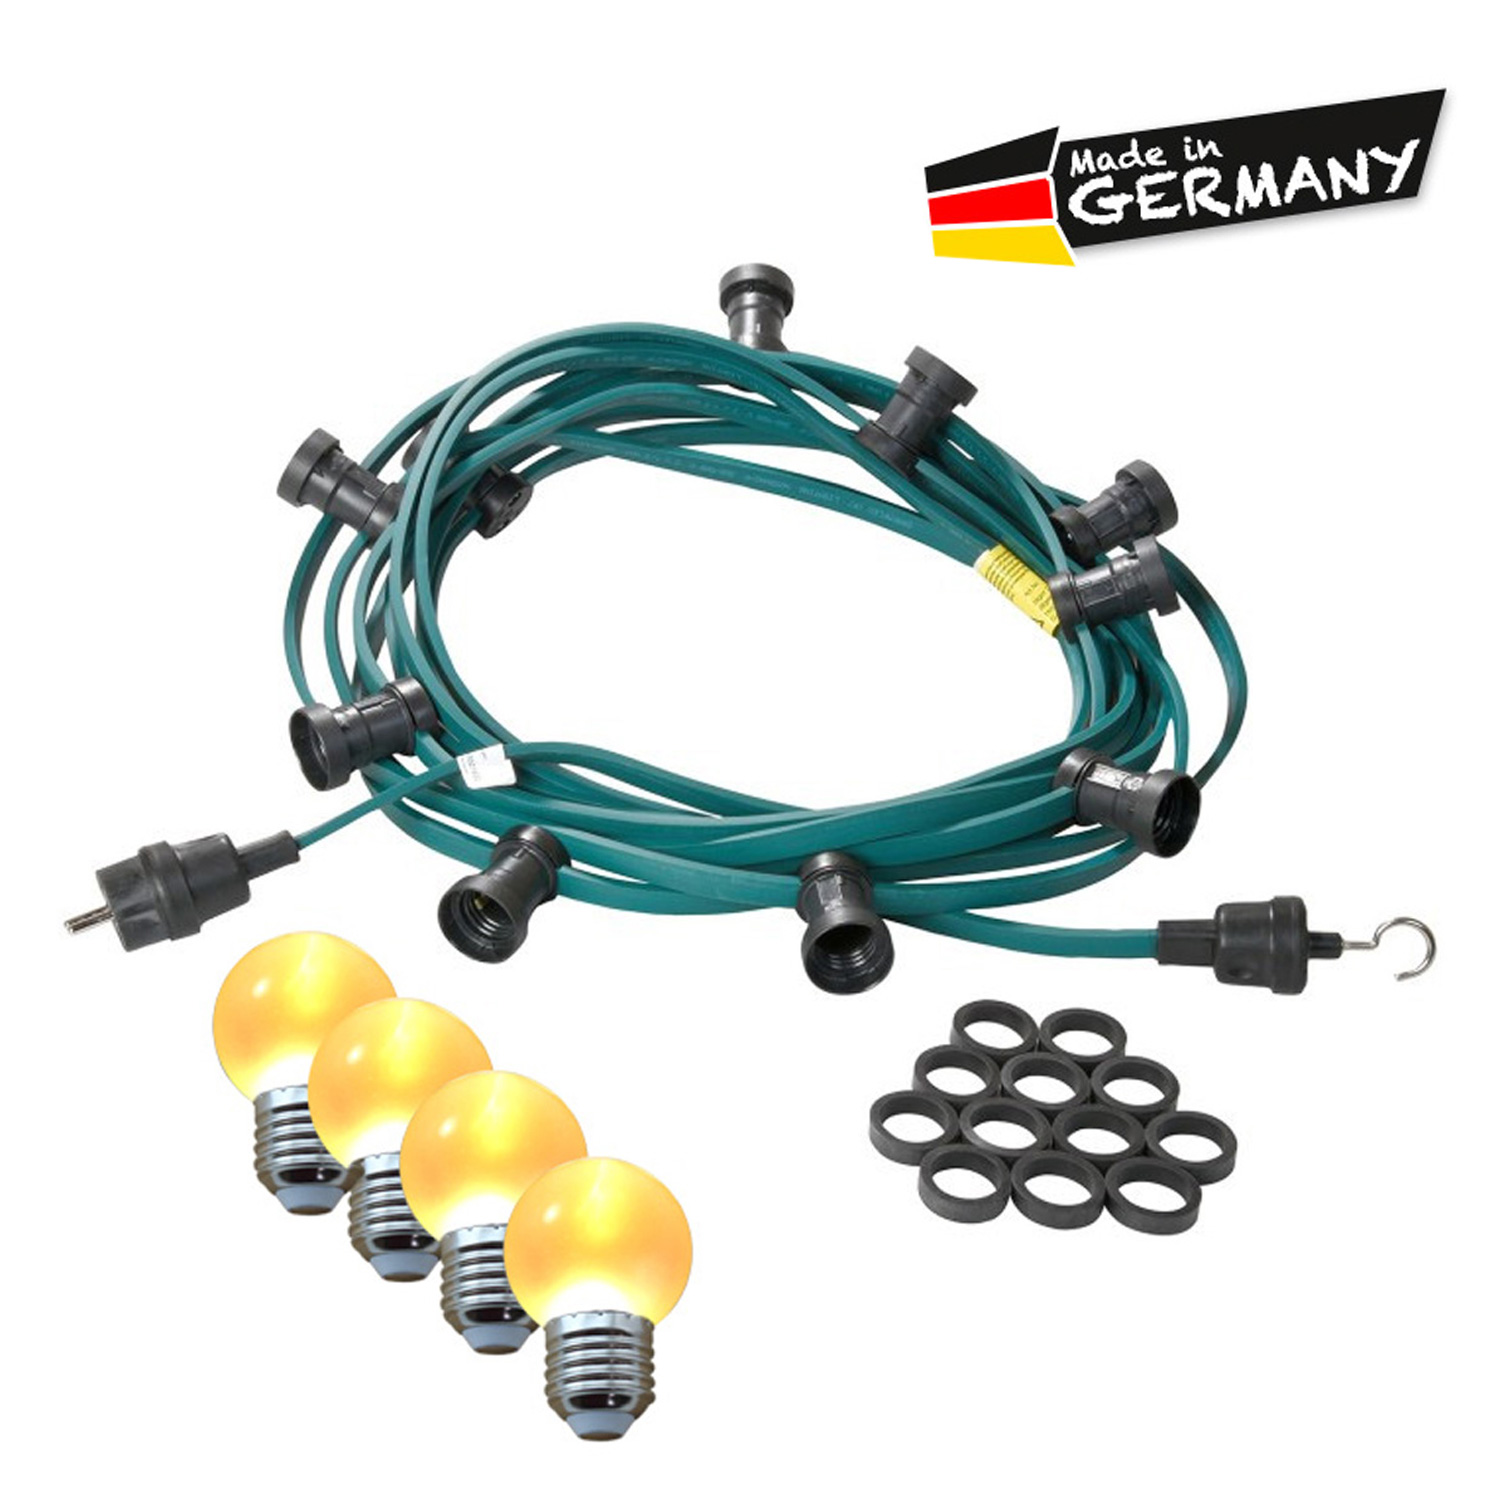 Illu-/Partylichterkette 50m | Außenlichterkette | Made in Germany | 50 x ultra-warmweisse LED Kugeln